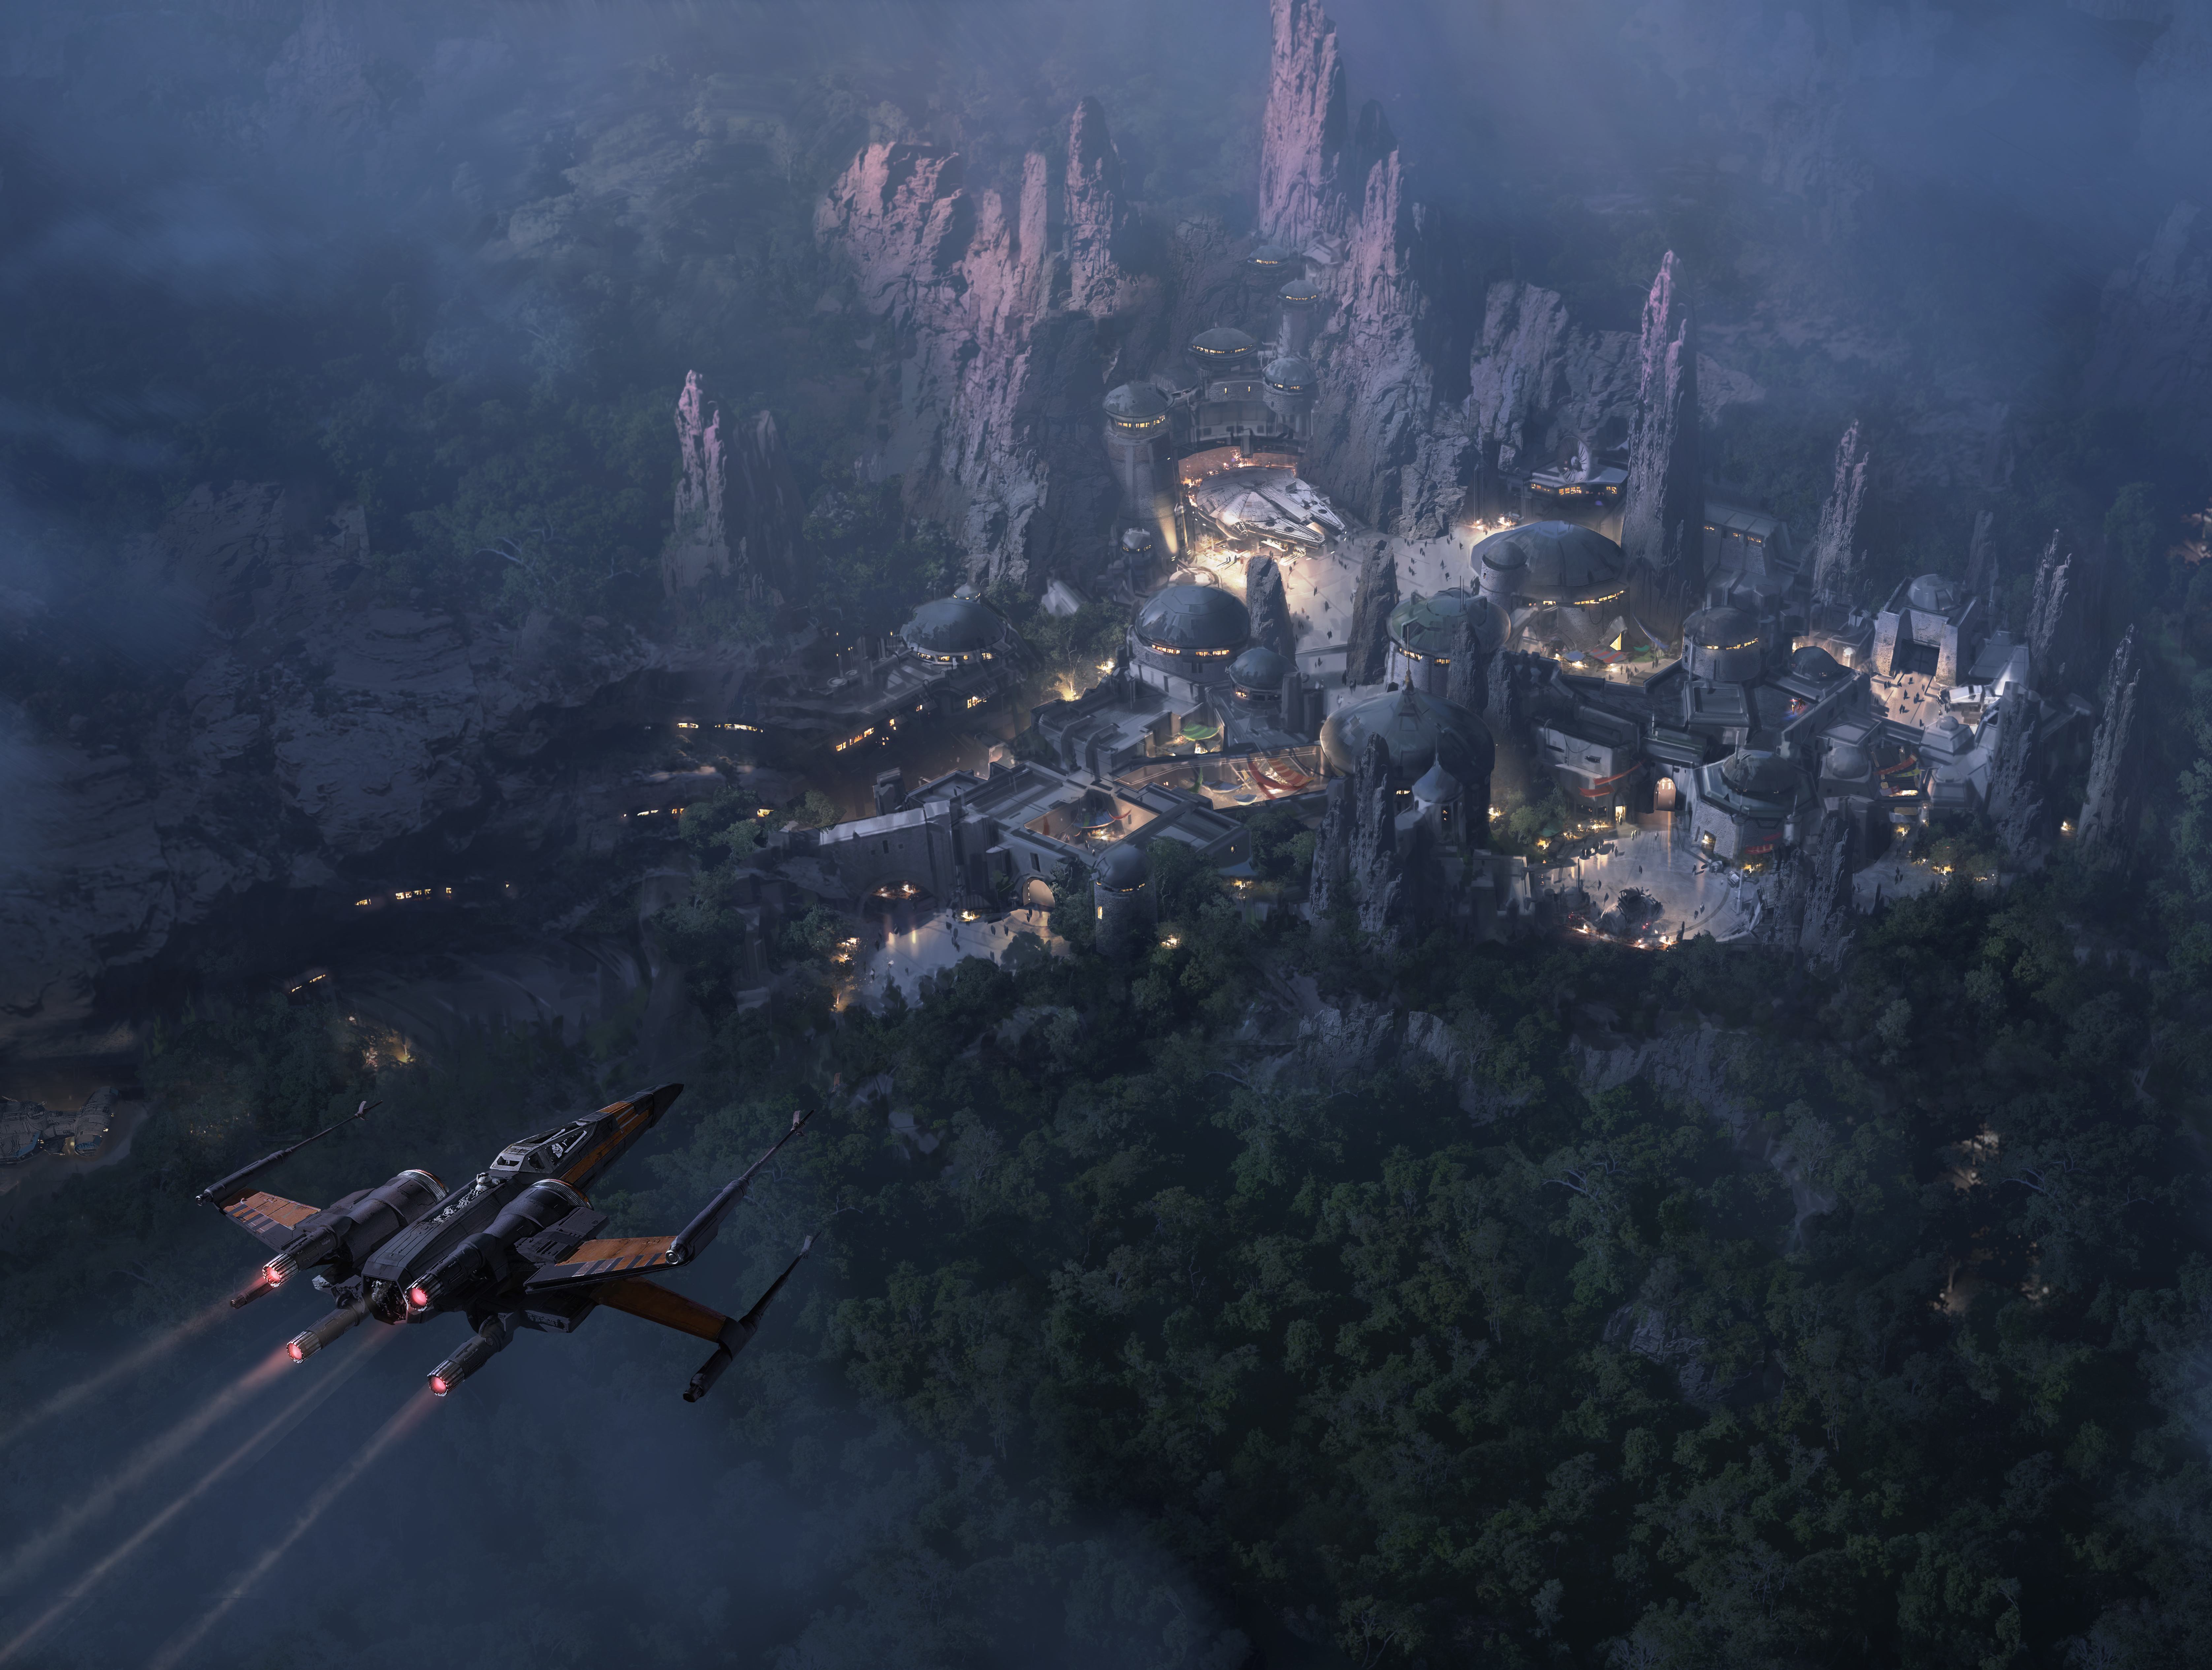 Disney divulga imagem que mostra parque temático de Star Wars à noite